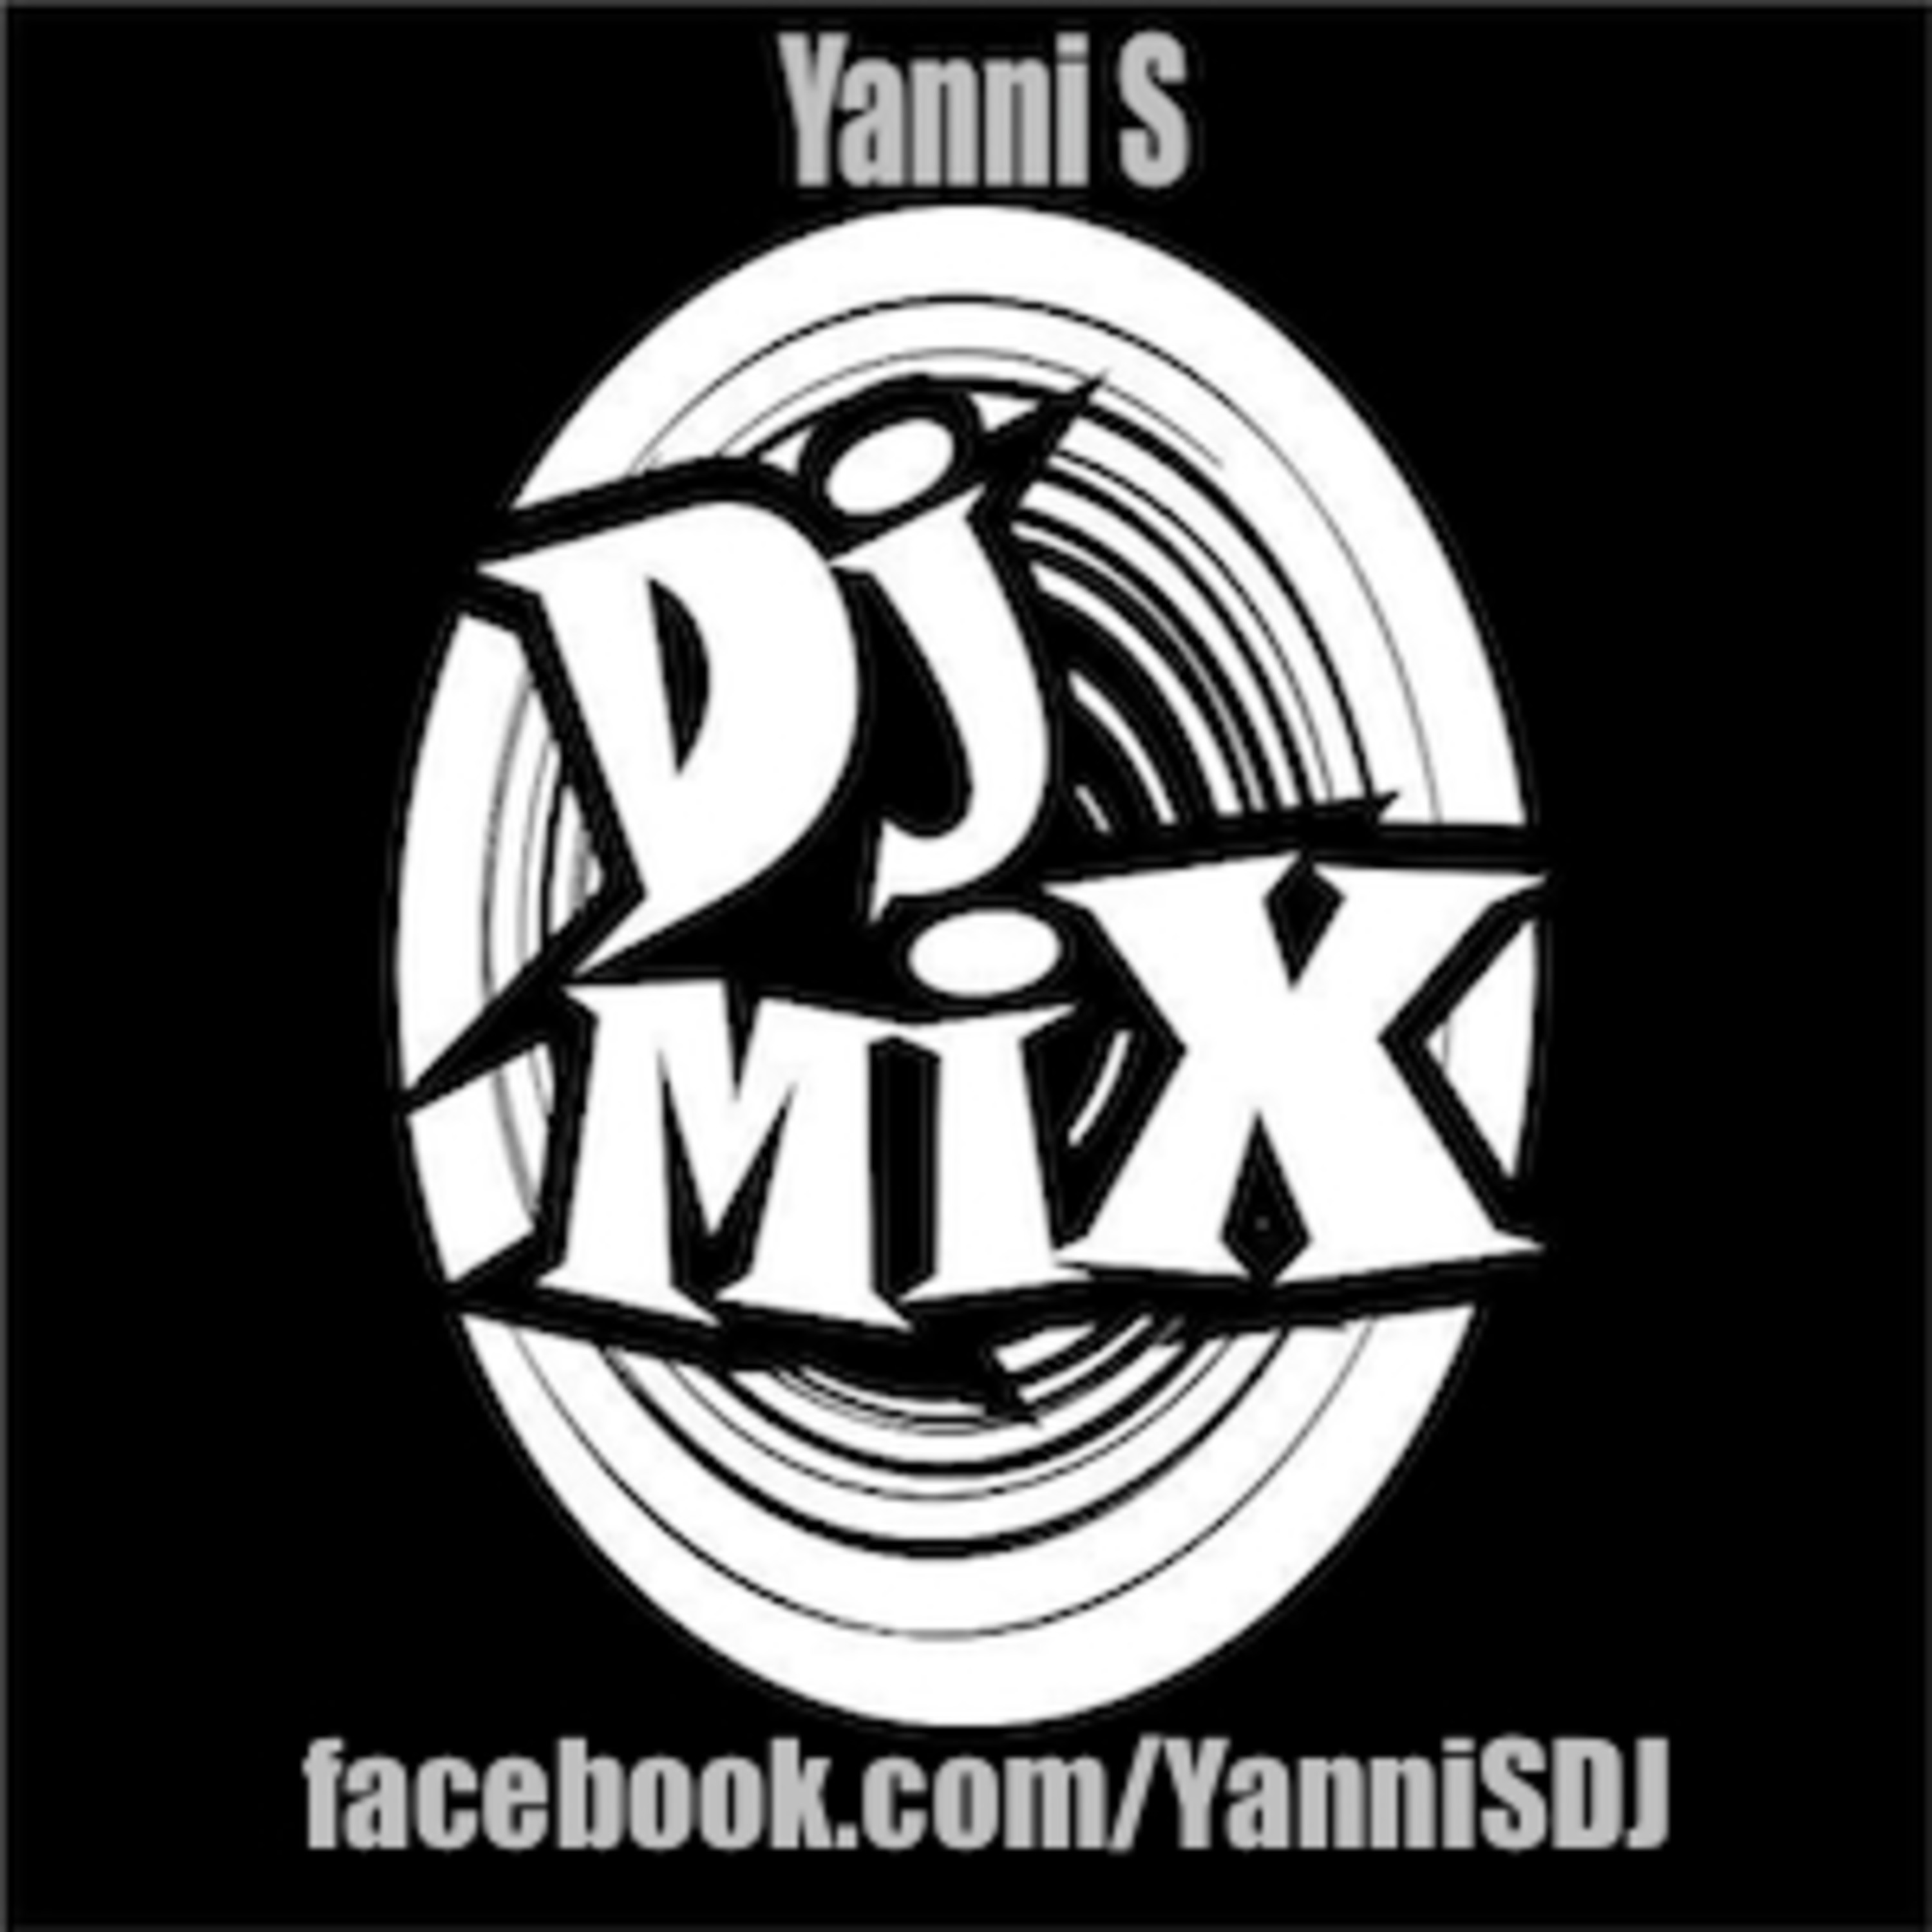 Yanni S - DJ Mix